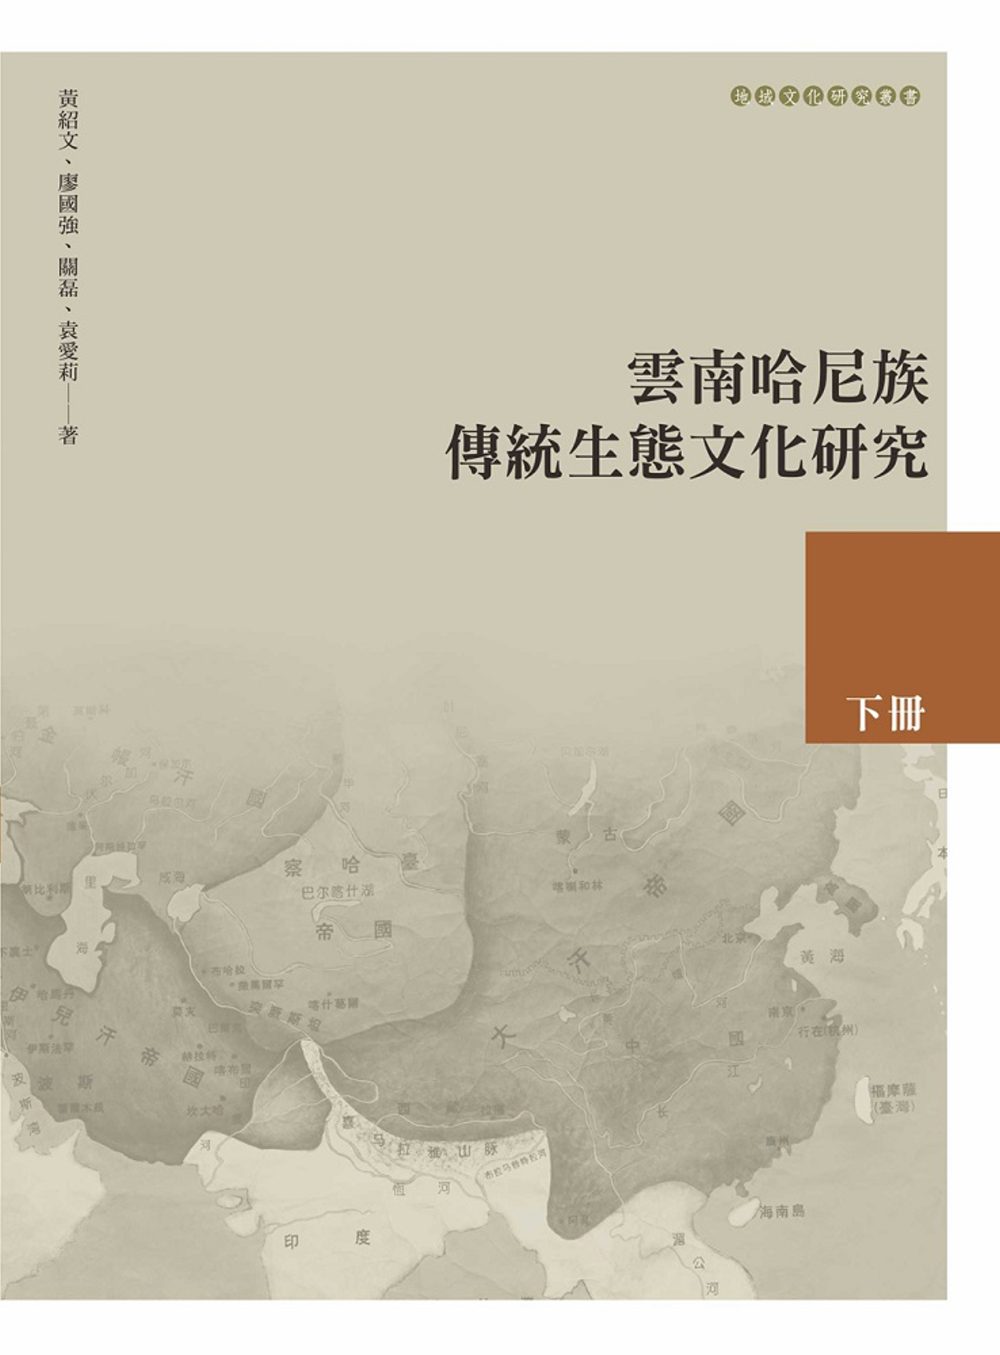 雲南哈尼族傳統生態文化研究